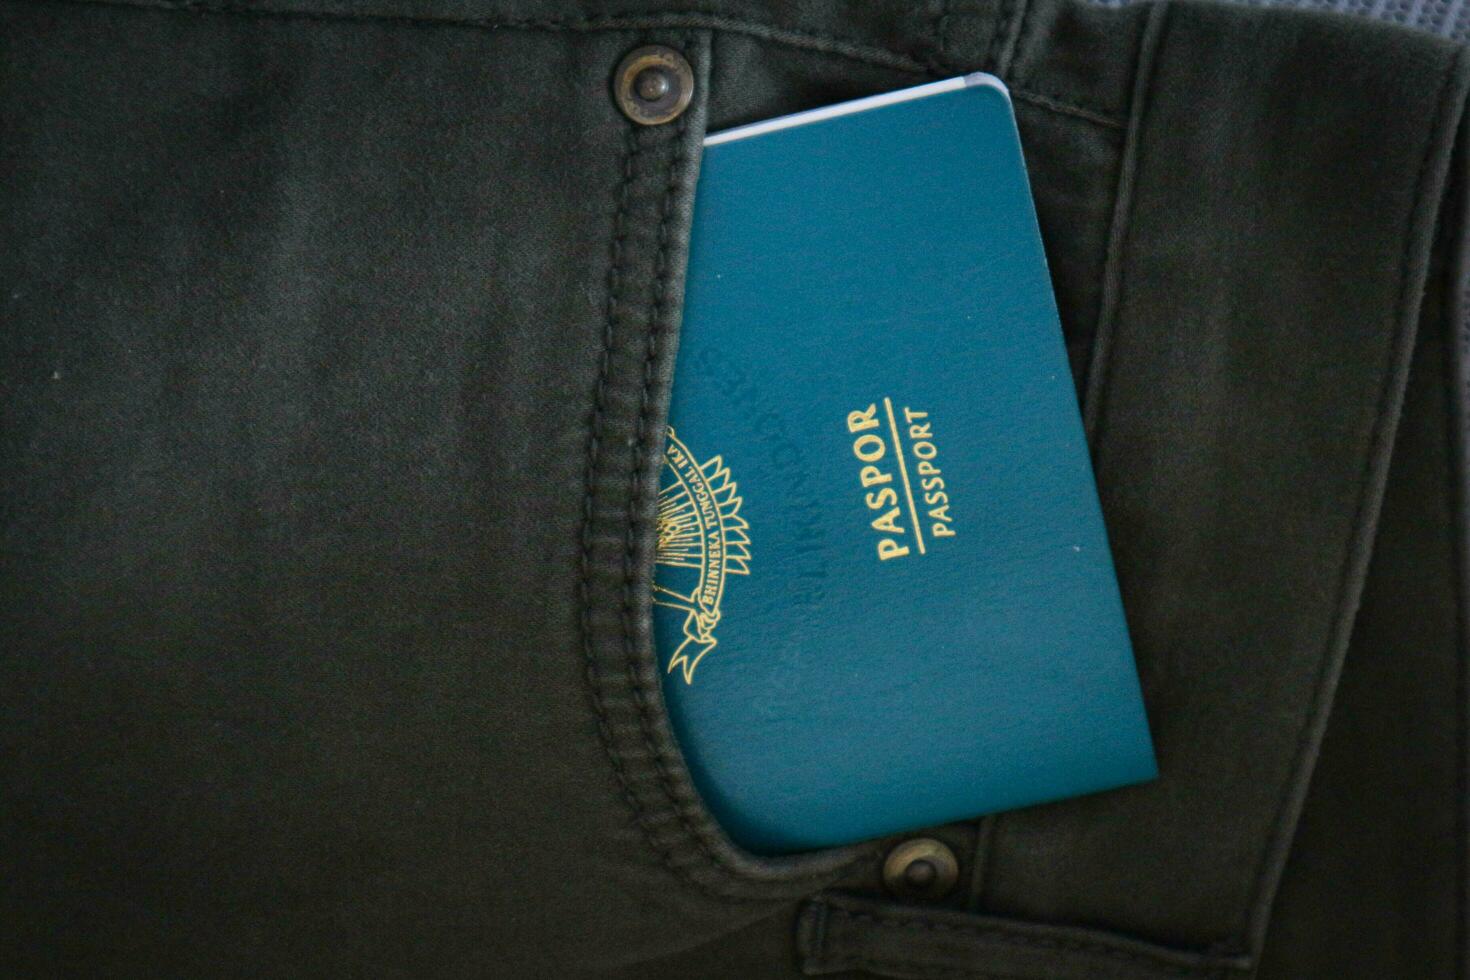 un indonesio ciudadanía pasaporte en un verde mezclilla bolsillo. foto